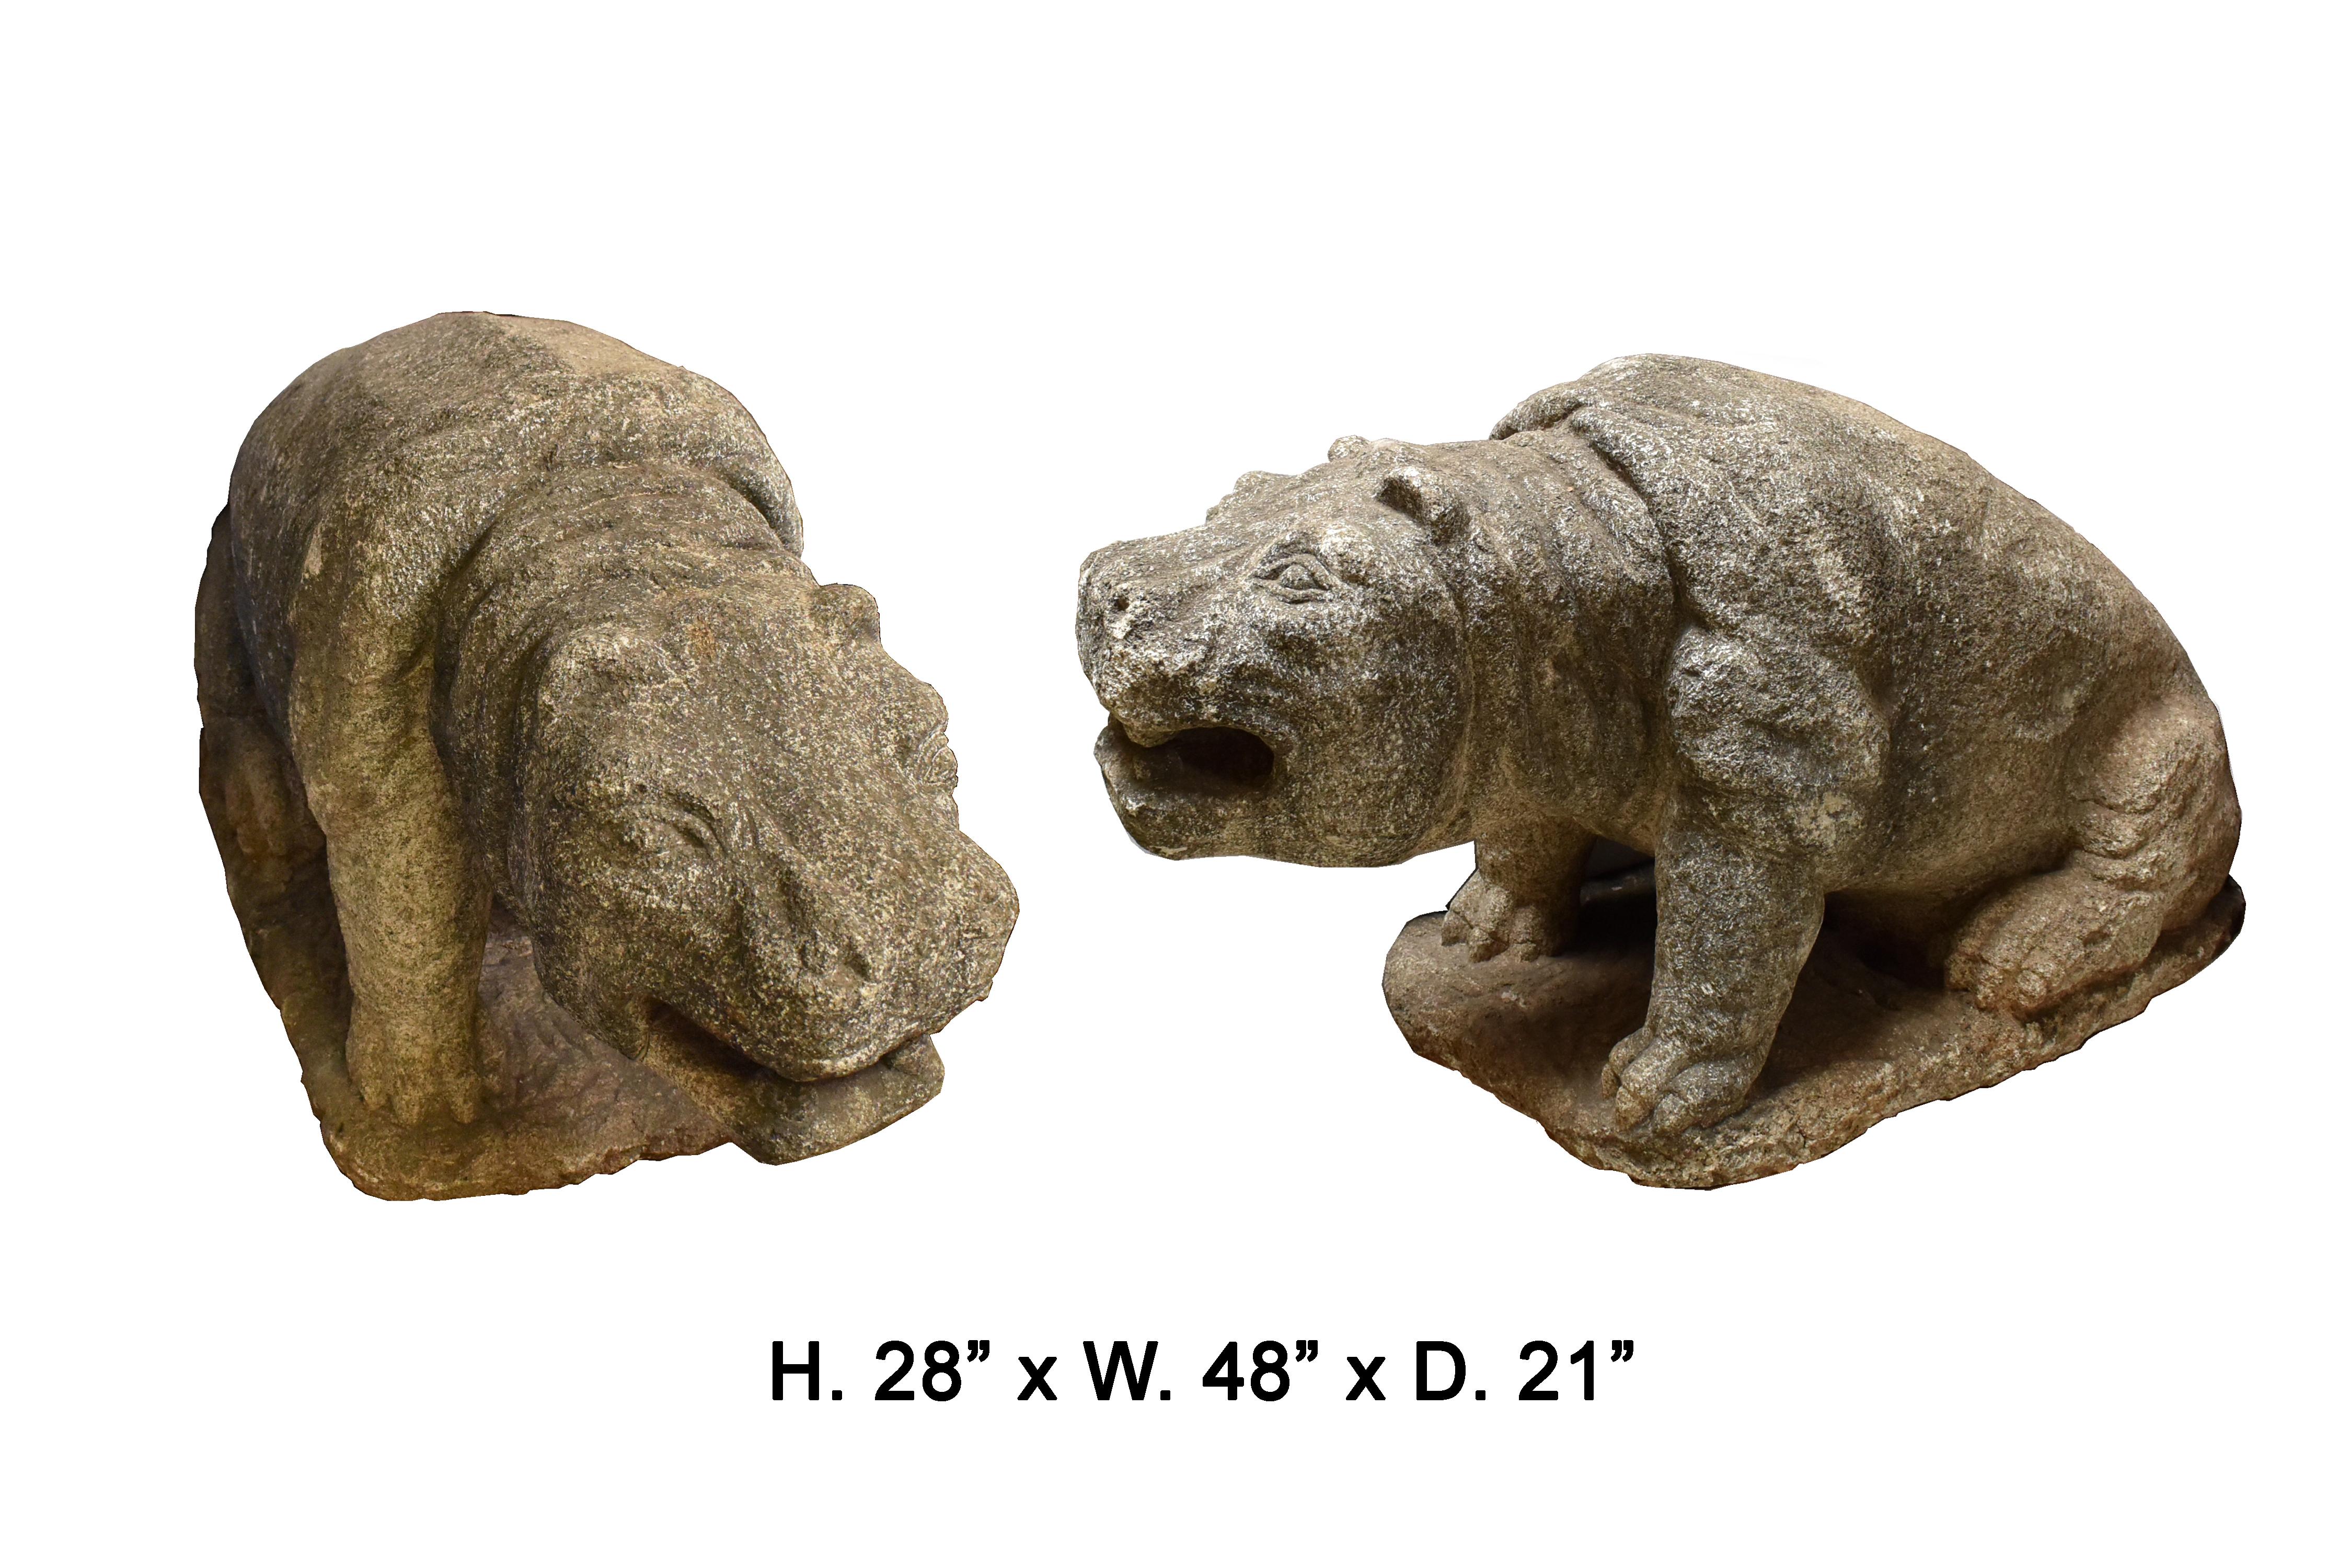 Magnifique et unique paire d'hippopotames en pierre sculptée portugaise du 18e siècle.
Chacun est sculpté avec une impression réaliste du visage. Il est très rare de trouver des hippopotames sculptés comme ornements de jardin.
Mesures : H 28